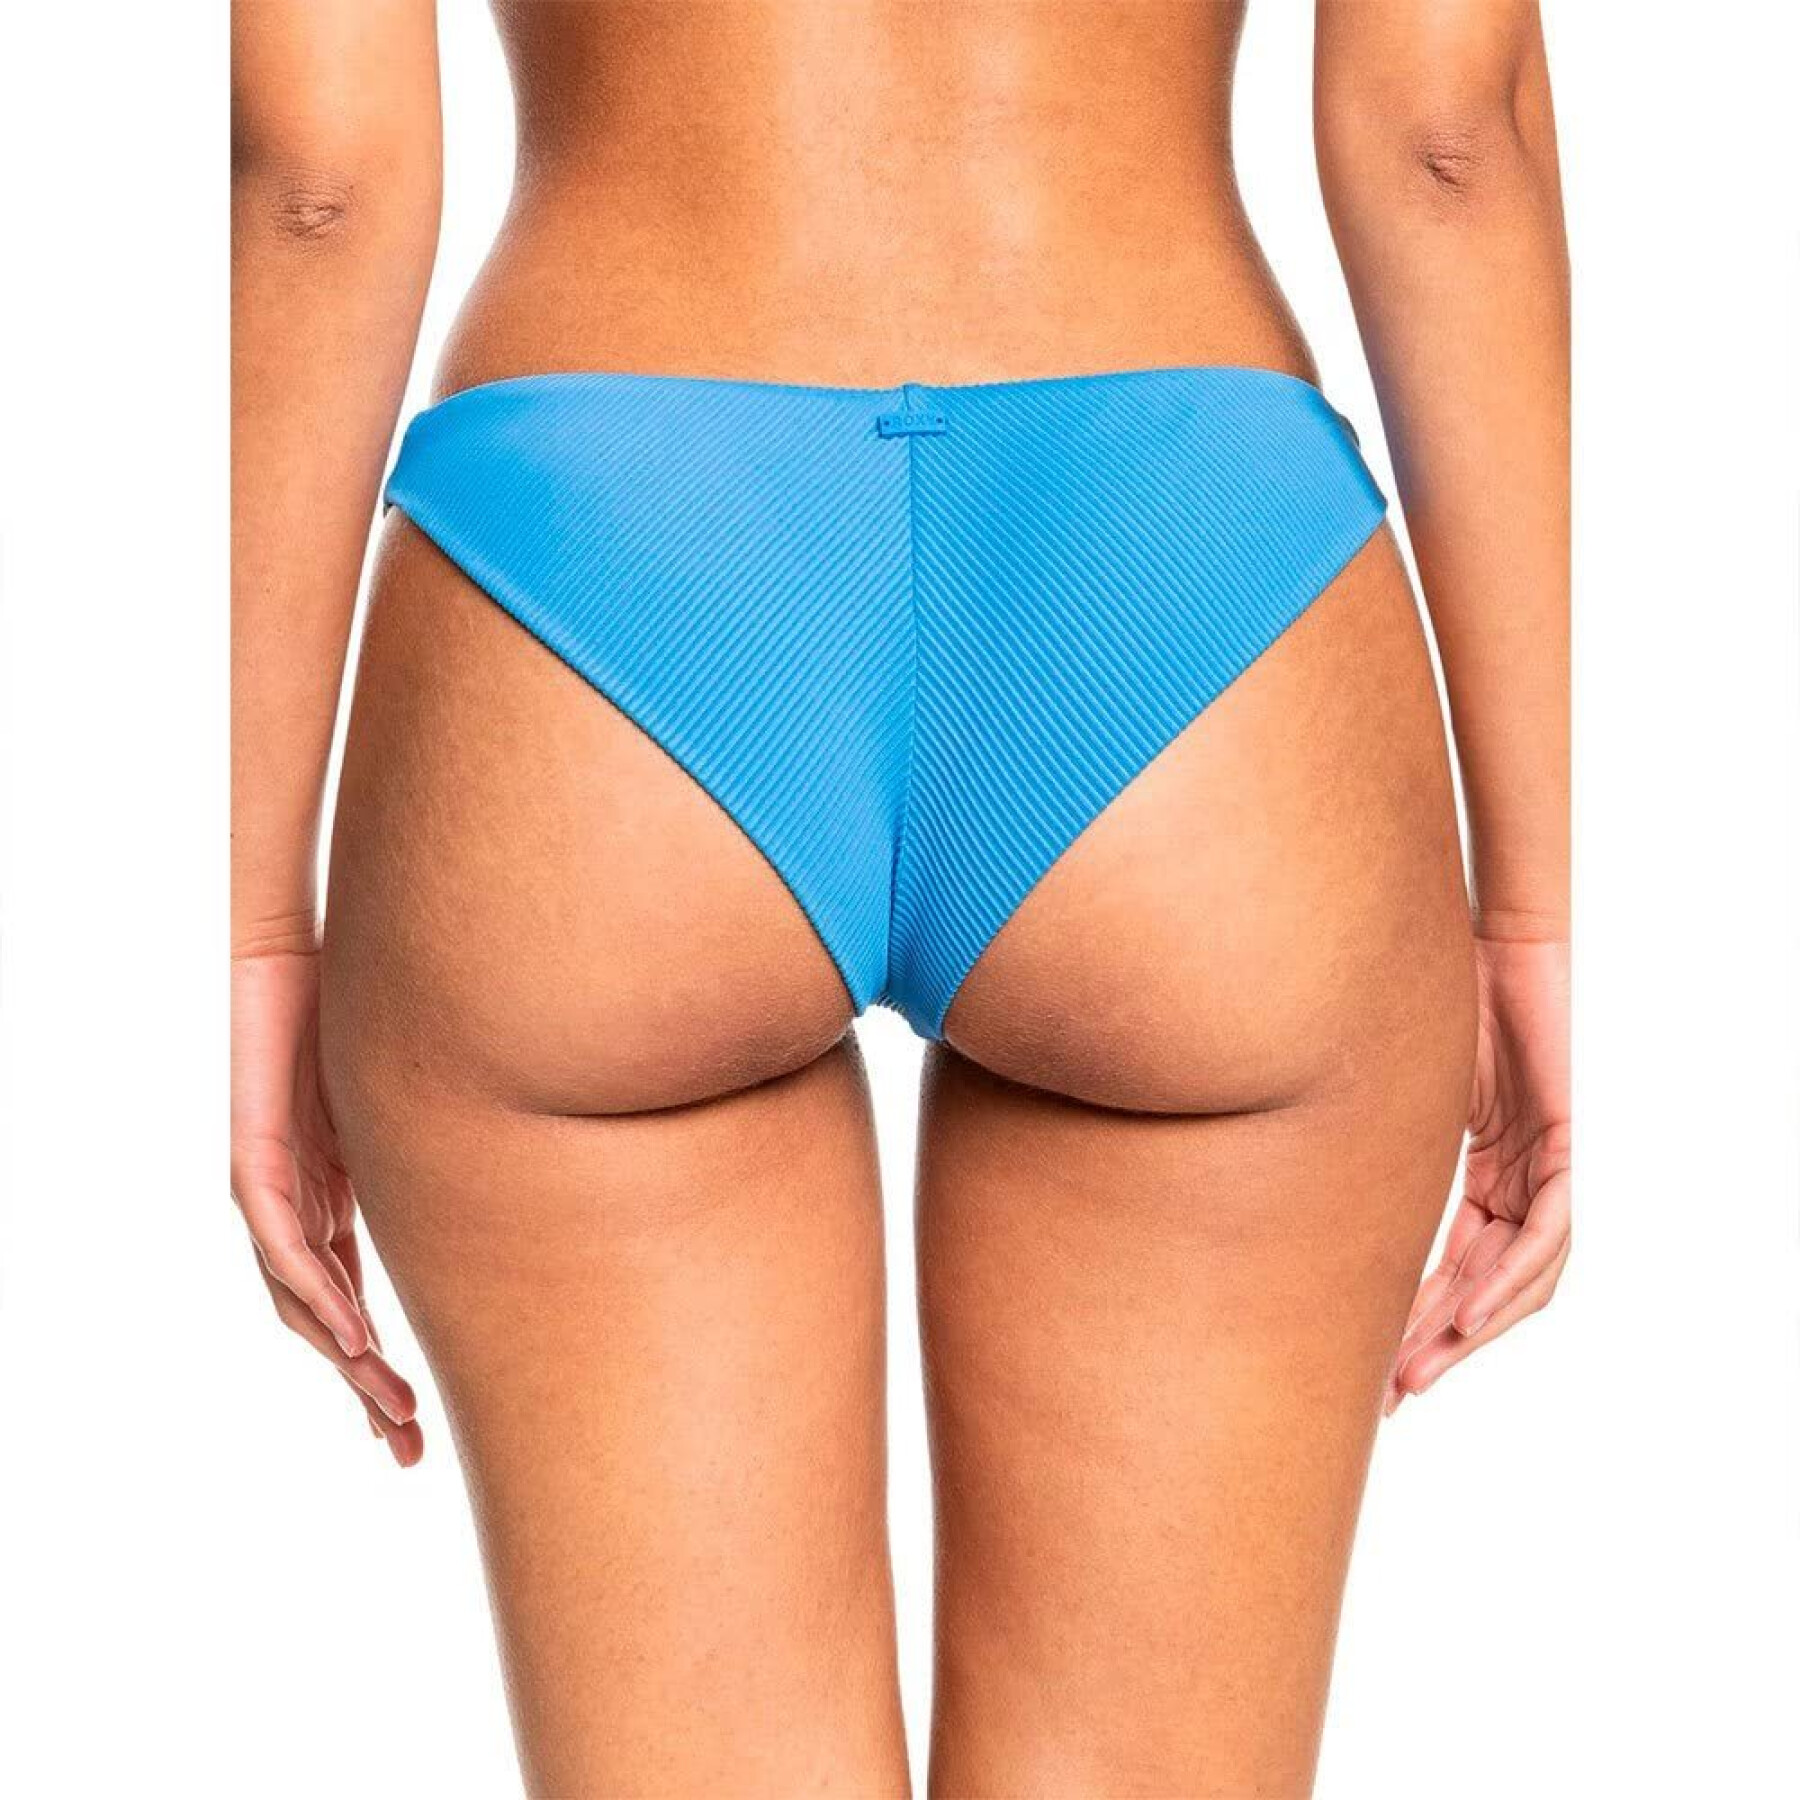 Women's swimwear stockings Roxy Rib Love The Baja